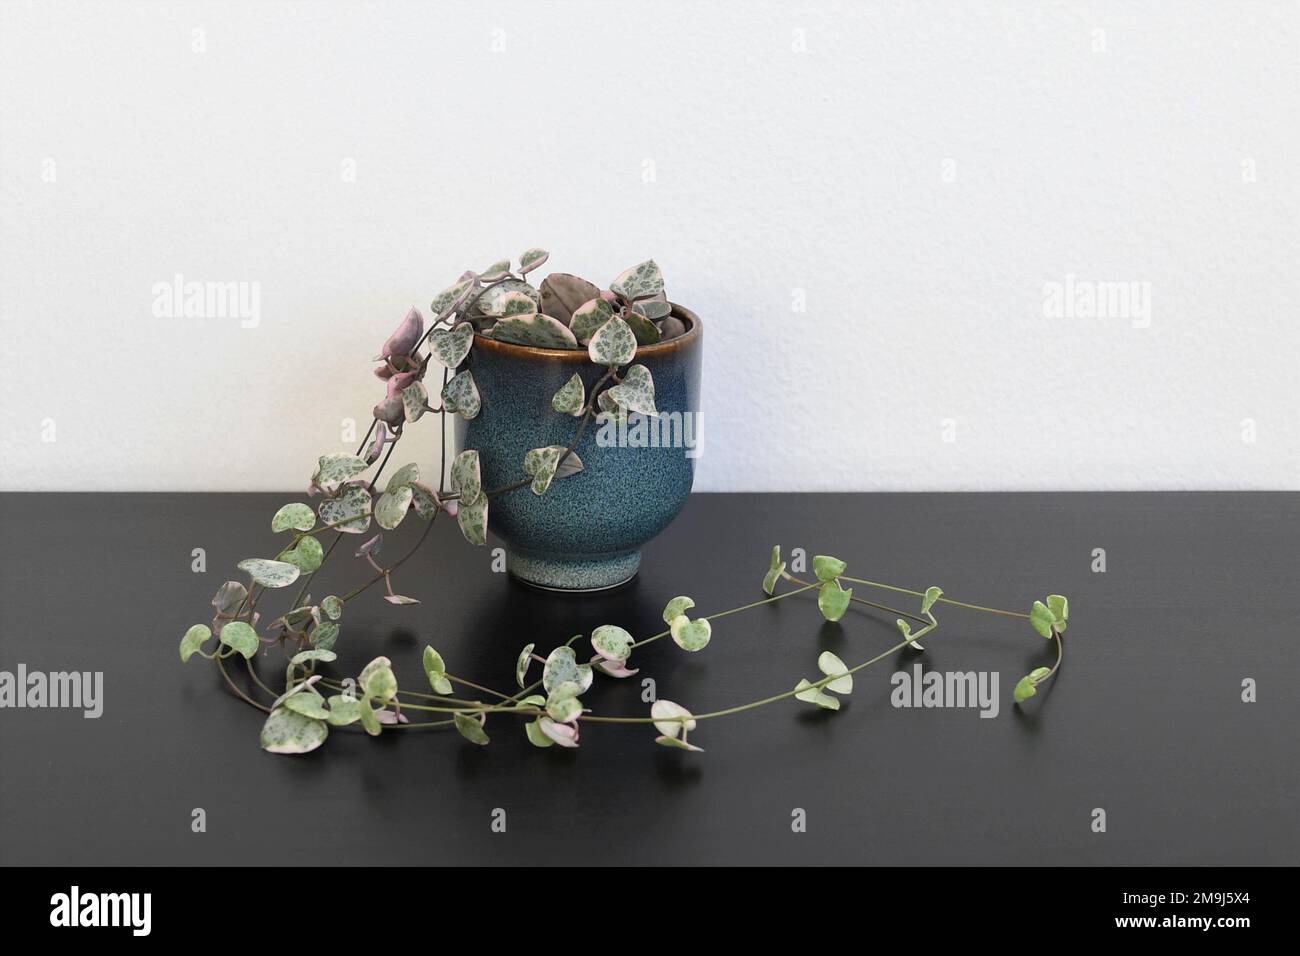 Verschiedene Herzschnur Hauspflanze (Ceropagia woodii variegata), in einem blauen Topf. Weinpflanze mit grünen, rosa und silbernen Blättern. Stockfoto